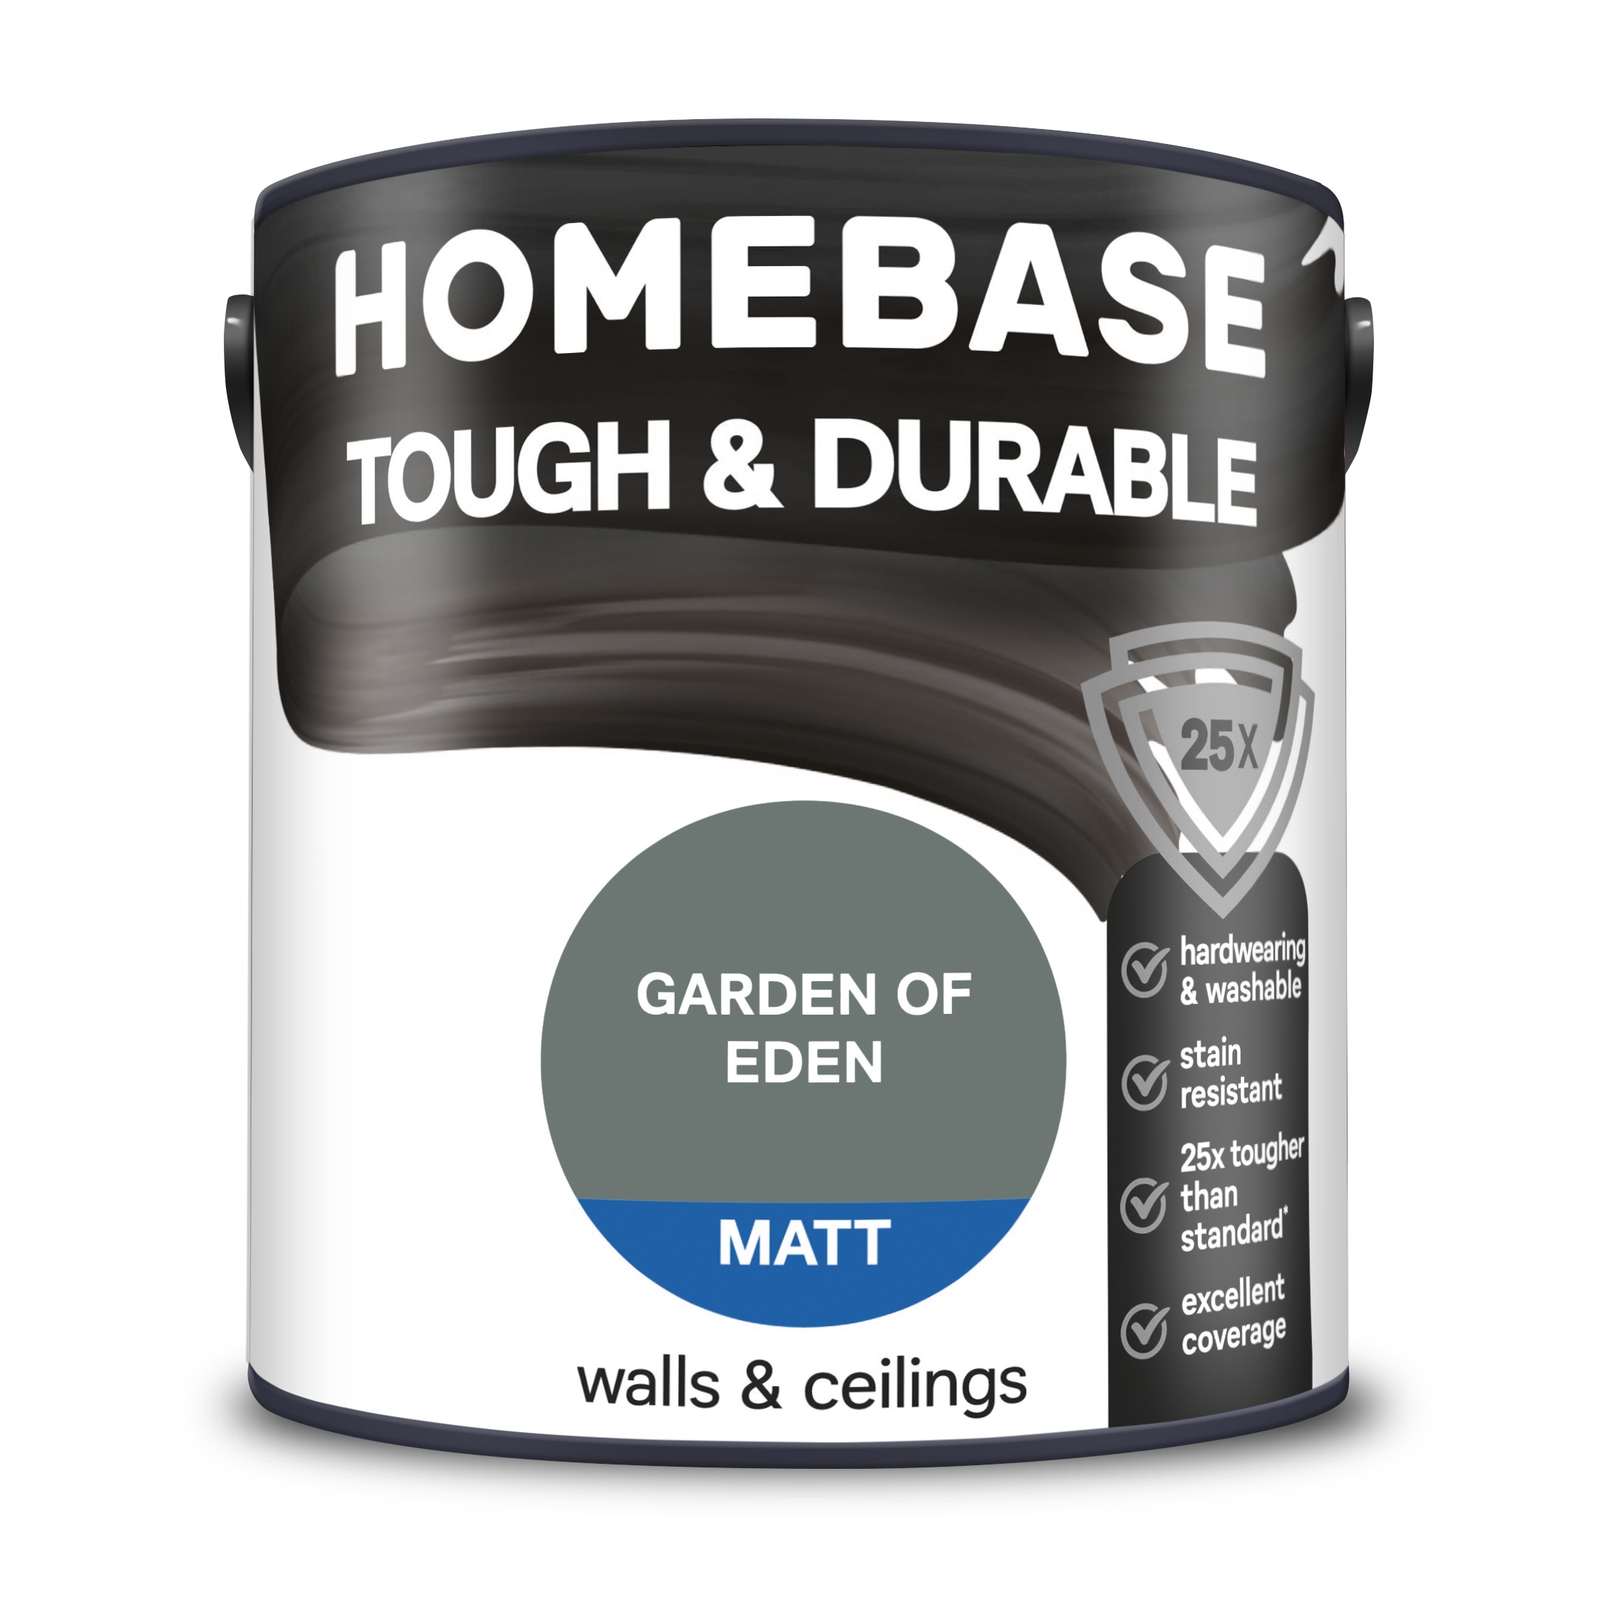 Homebase Tough & Durable Matt Paint Garden of Eden - 2.5L